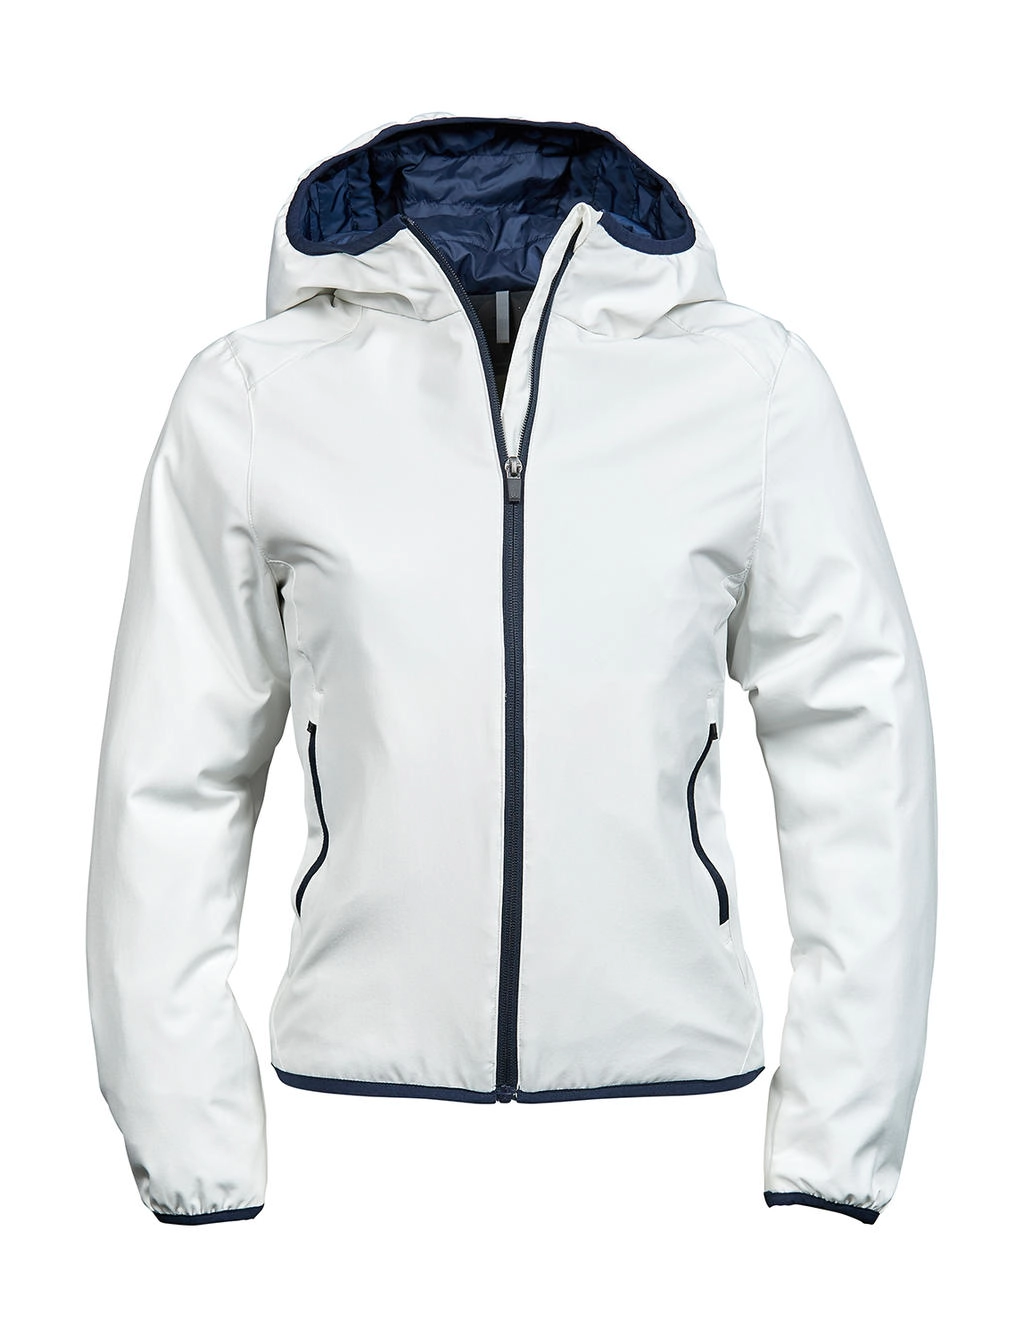 Ladies` Competition Jacket zum Besticken und Bedrucken in der Farbe Snow/Navy mit Ihren Logo, Schriftzug oder Motiv.